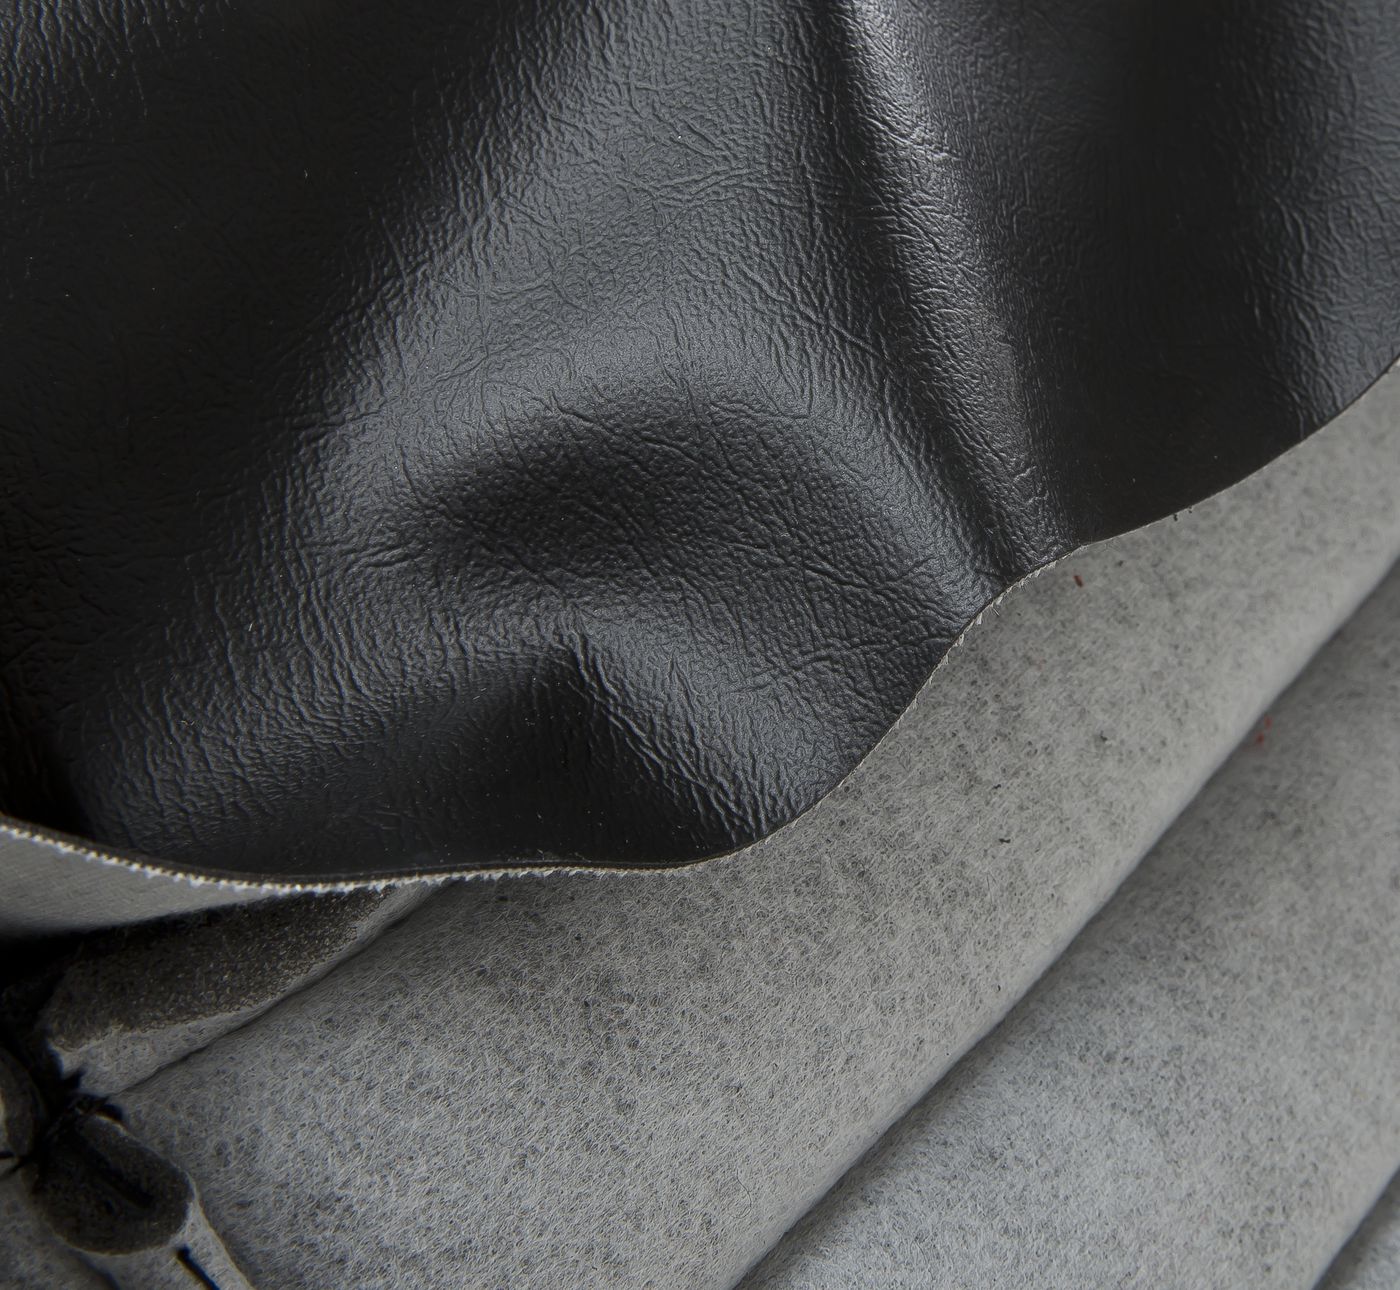 Ledersitzbezüge
Leather seat covers
Housses de siège en cuir
F